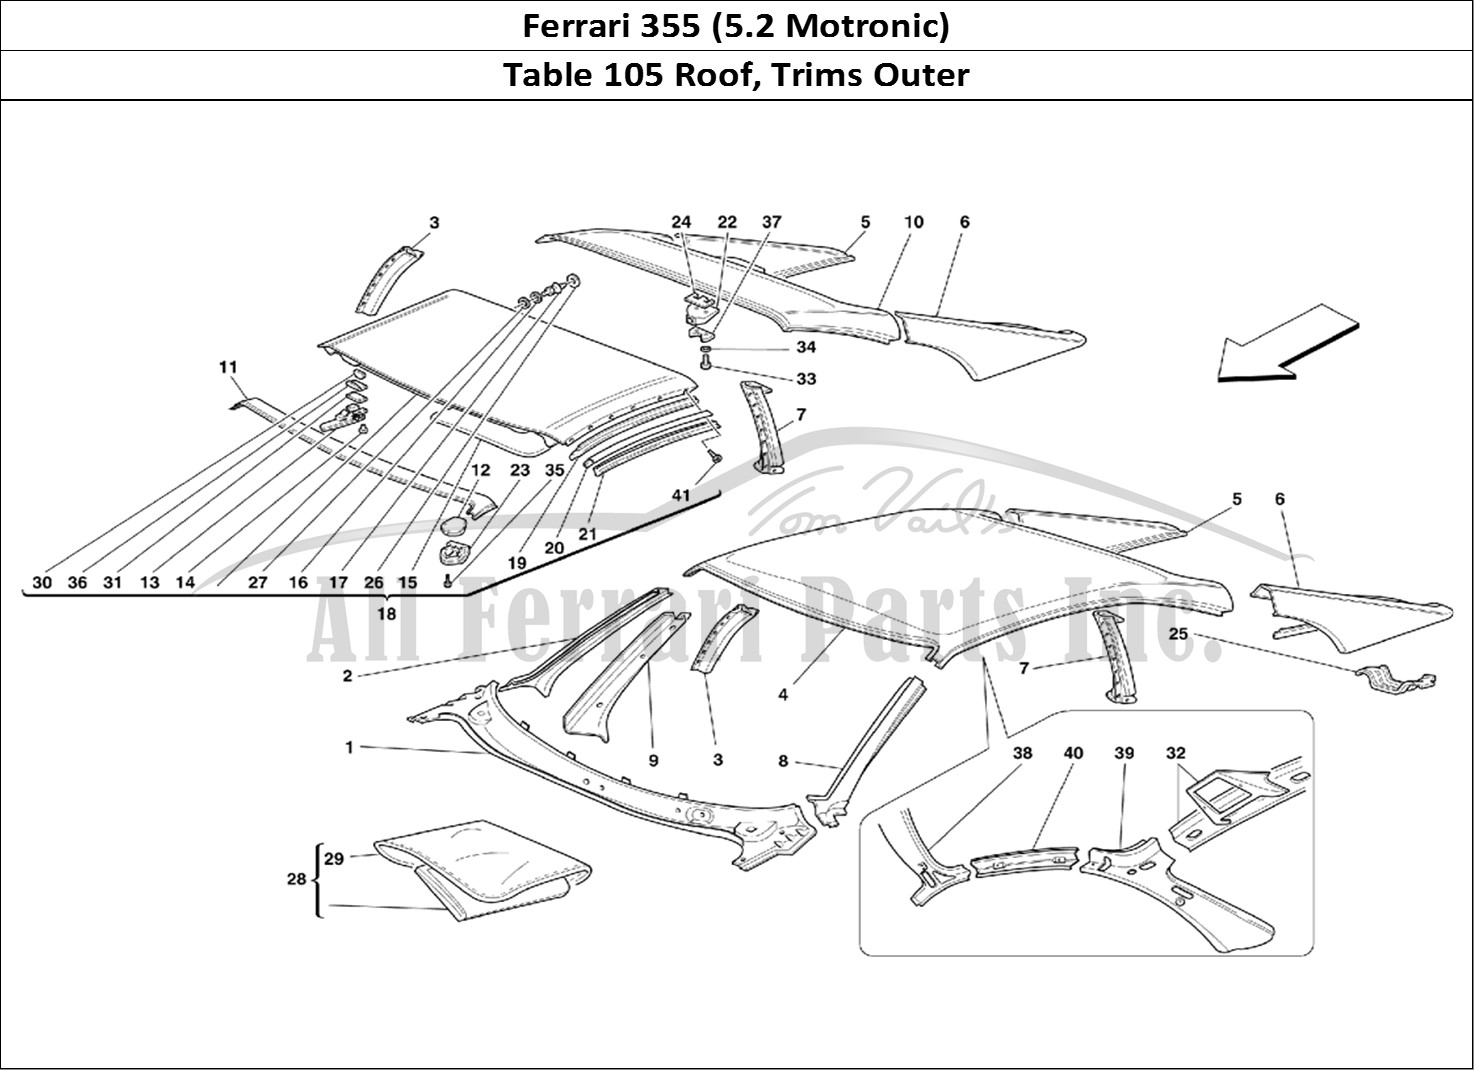 Ferrari Parts Ferrari 355 (5.2 Motronic) Page 105 Roof - Outer Trims